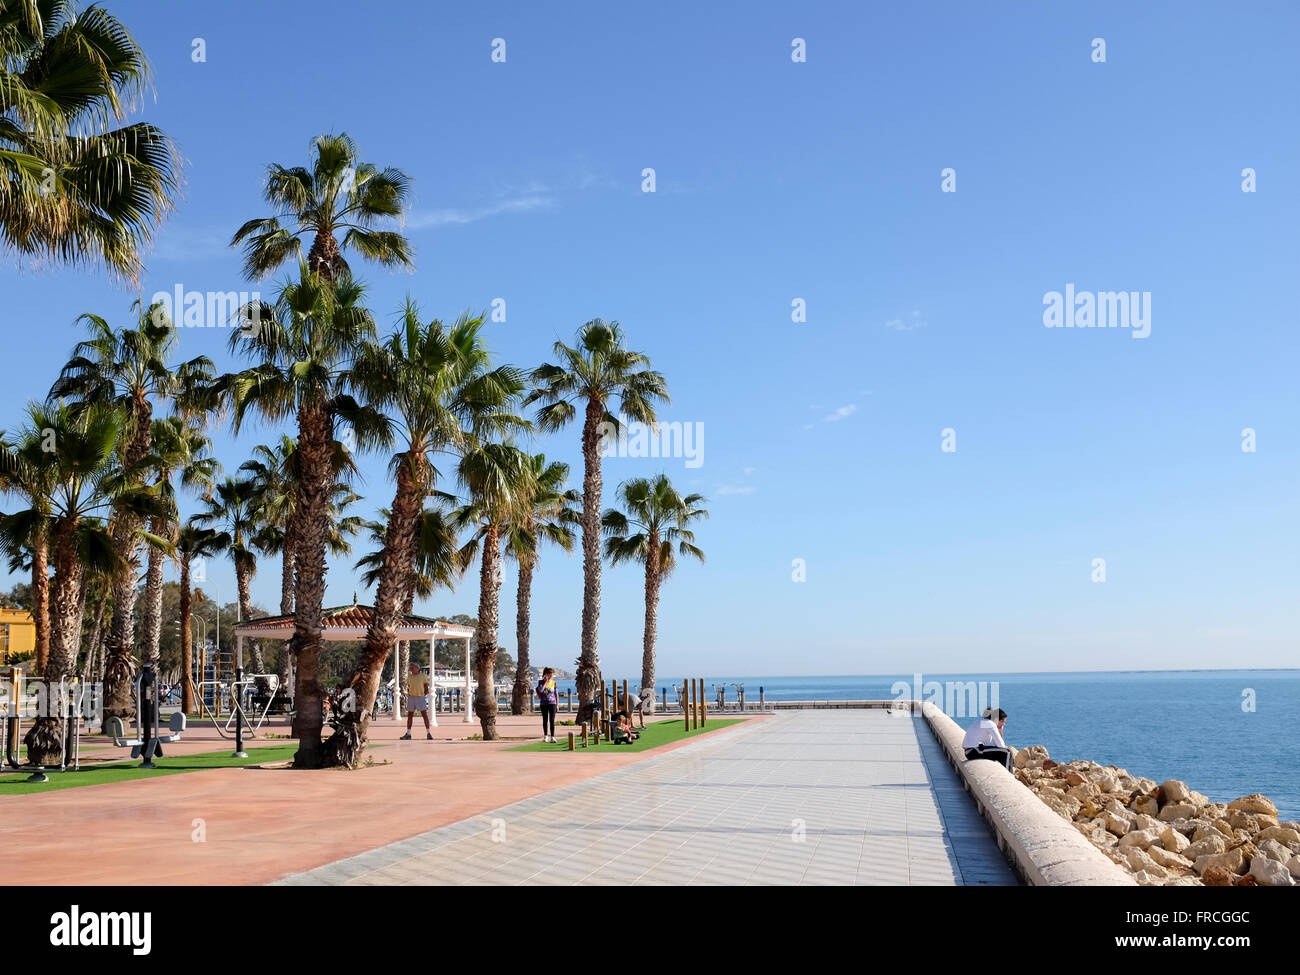 Malaga, Costa del Sol, Spain Stock Photo